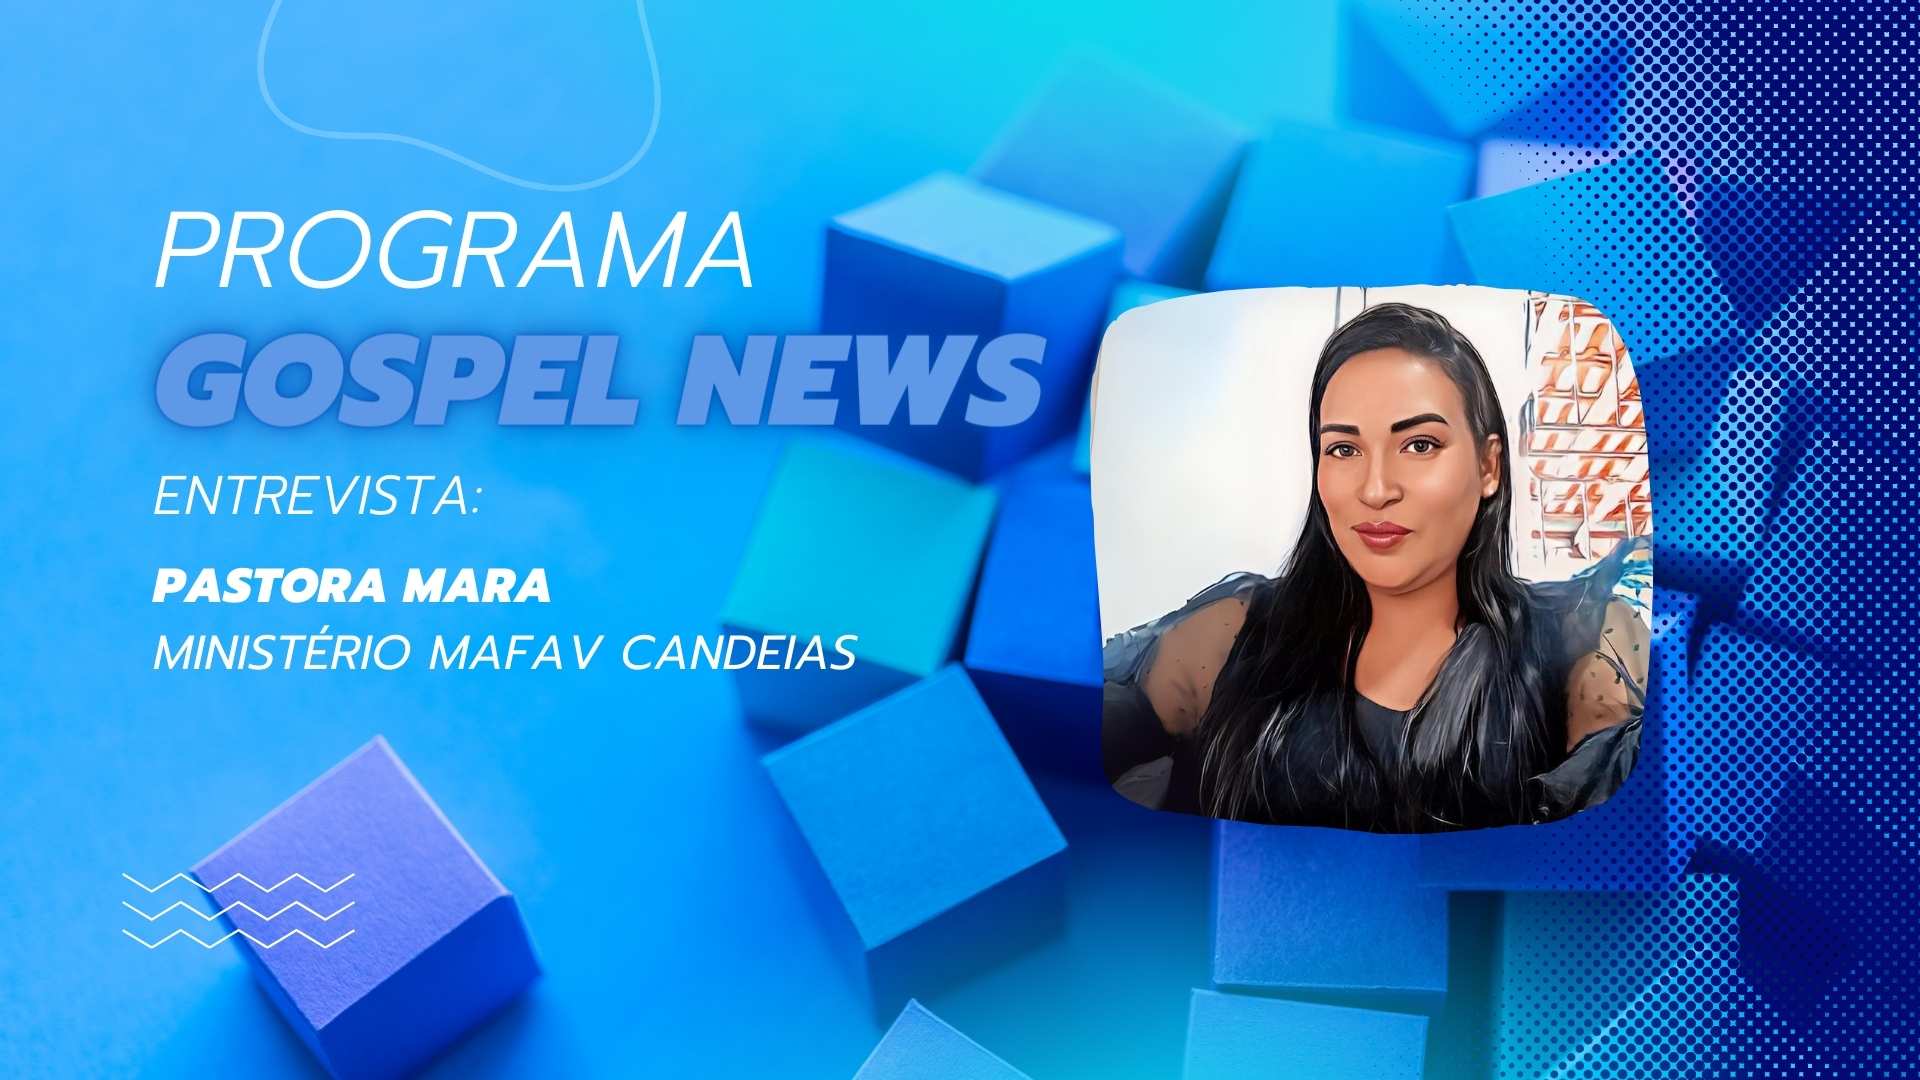 Programa Gospel News entrevista: Pastora Mara - Ministério MAFAV Candeias